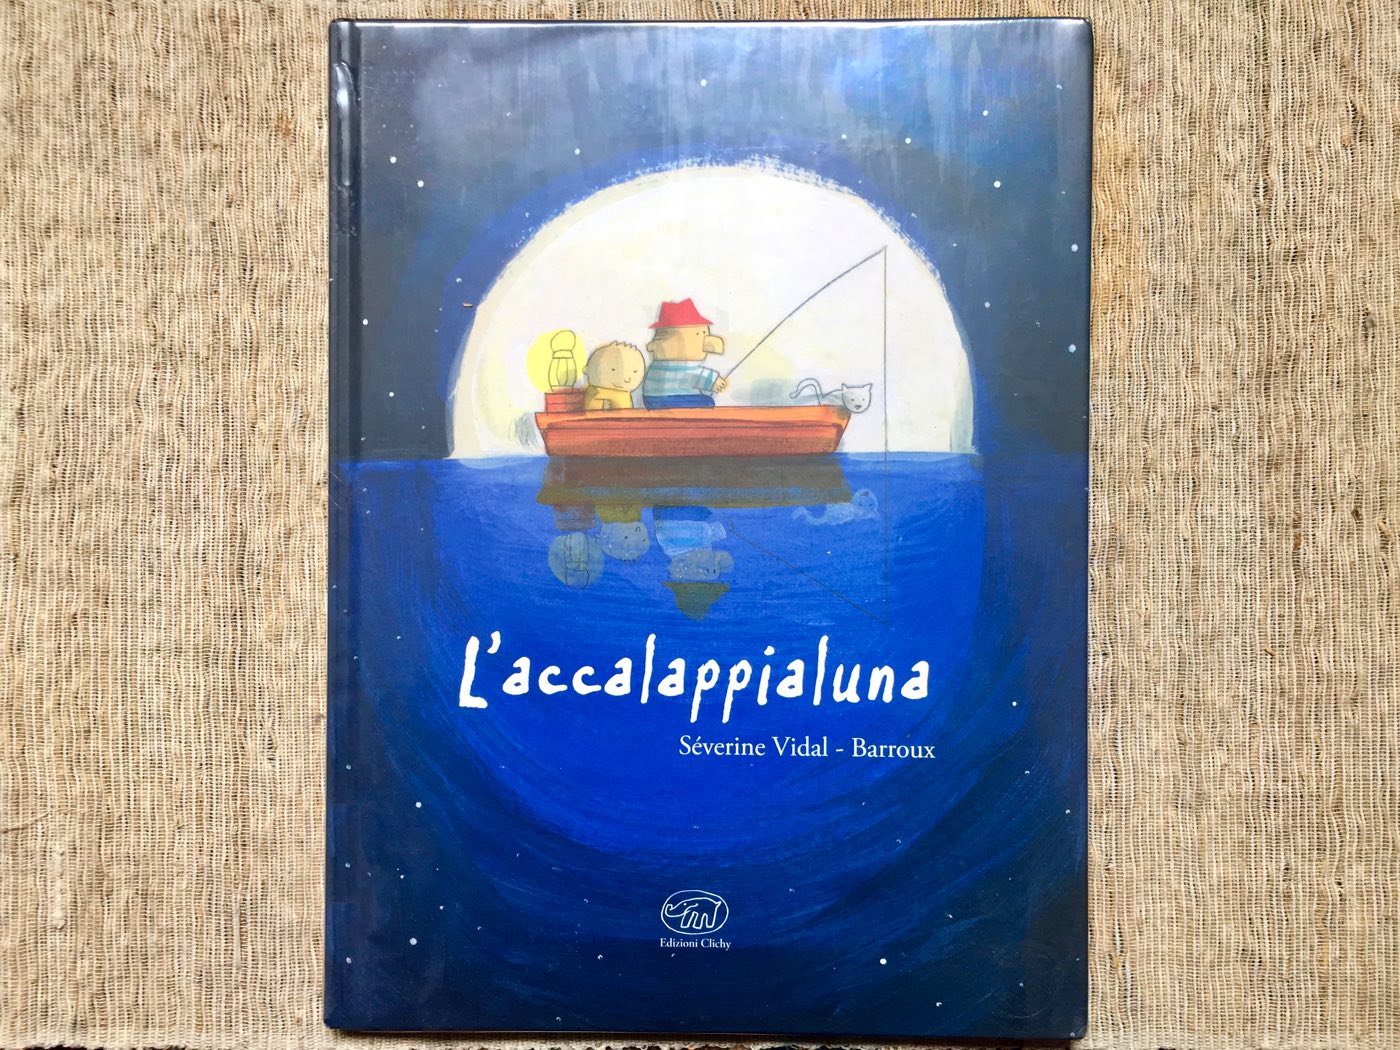 Copertina del libro Accalappialuna, una bella storia di racconti tra nonno e nipote